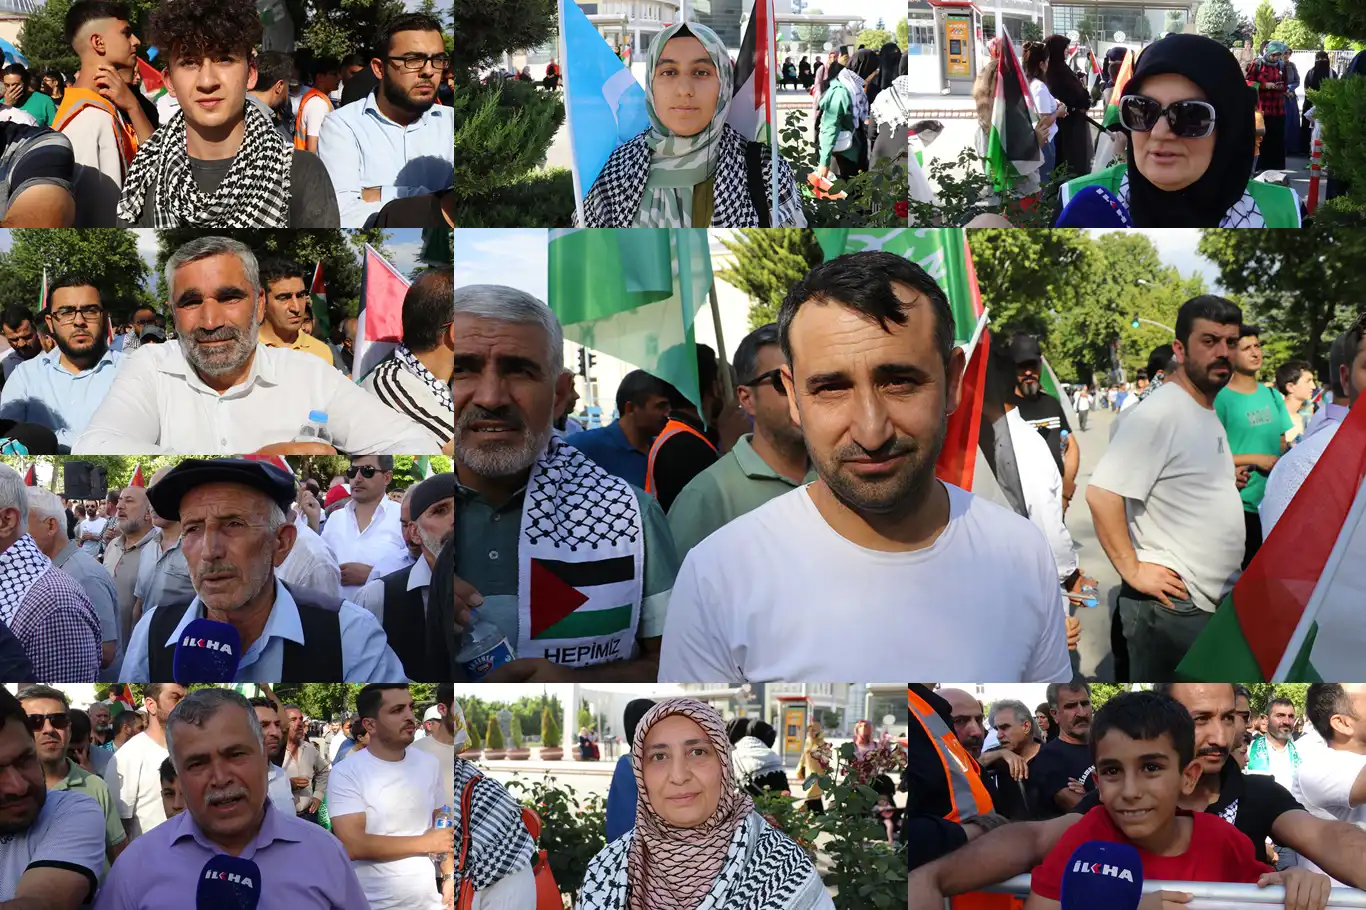 Halk: Gazze'deki soykırımın son bulması için artık somut adımların atılması lazım